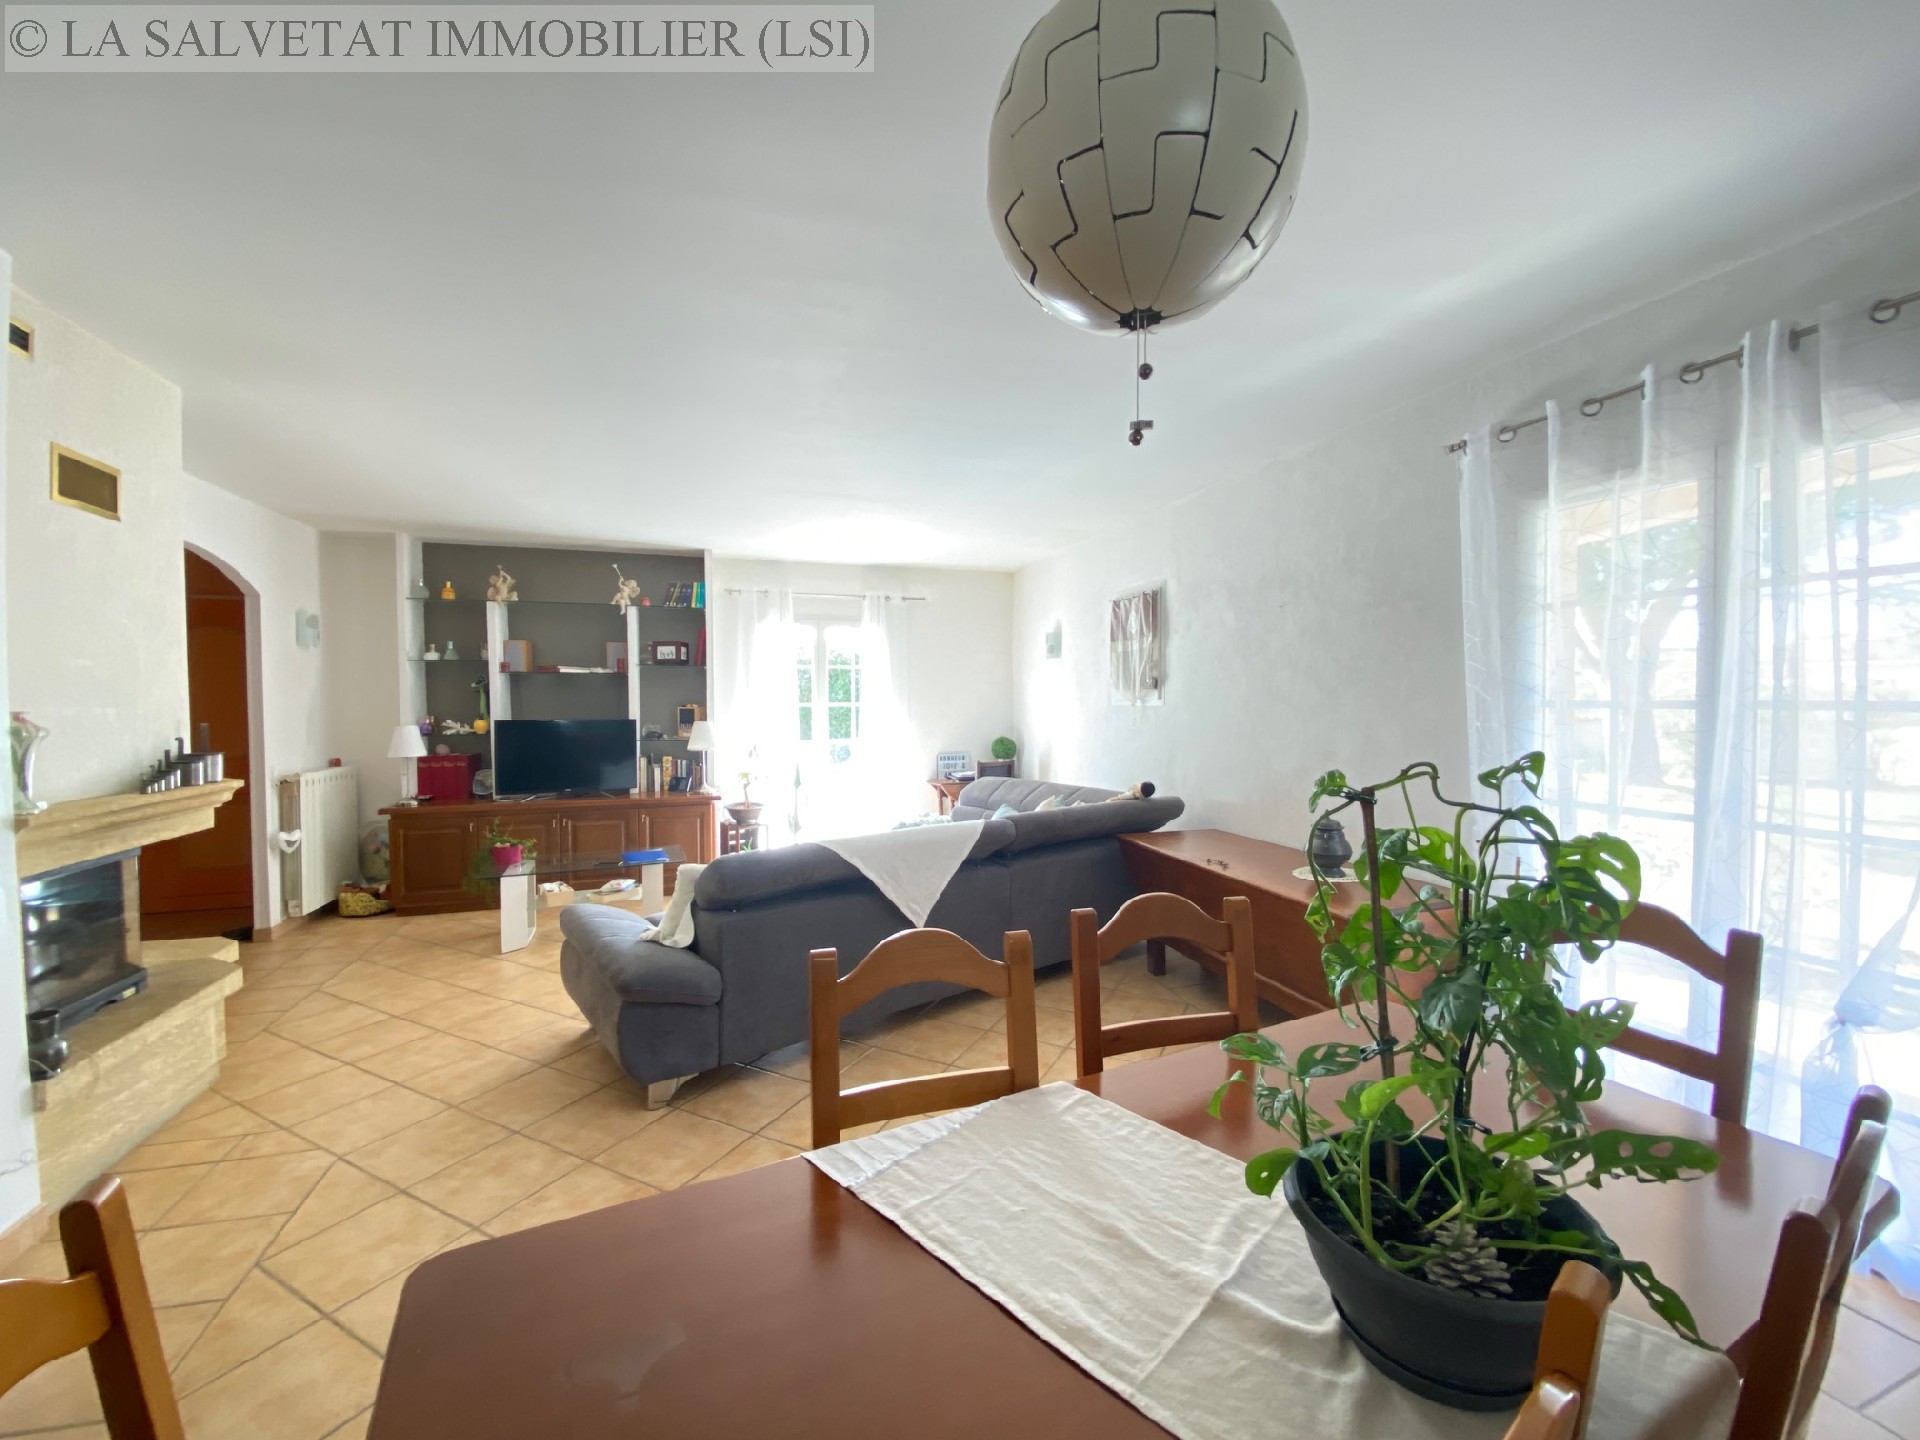 Vente maison-villa - TOURNEFEUILLE<br>137 m², 5 pièces